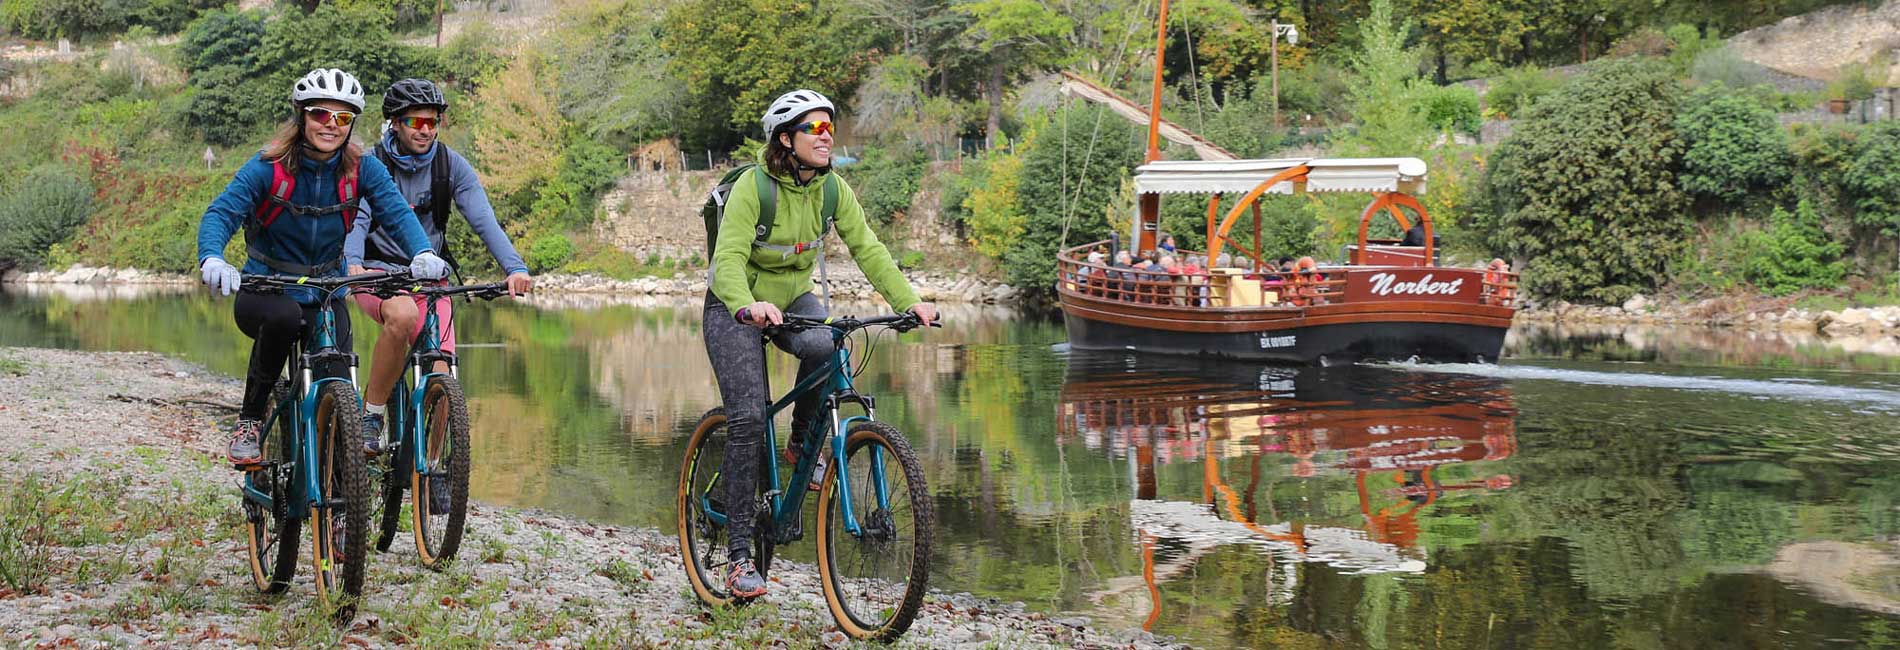 La Dordogne en vélo